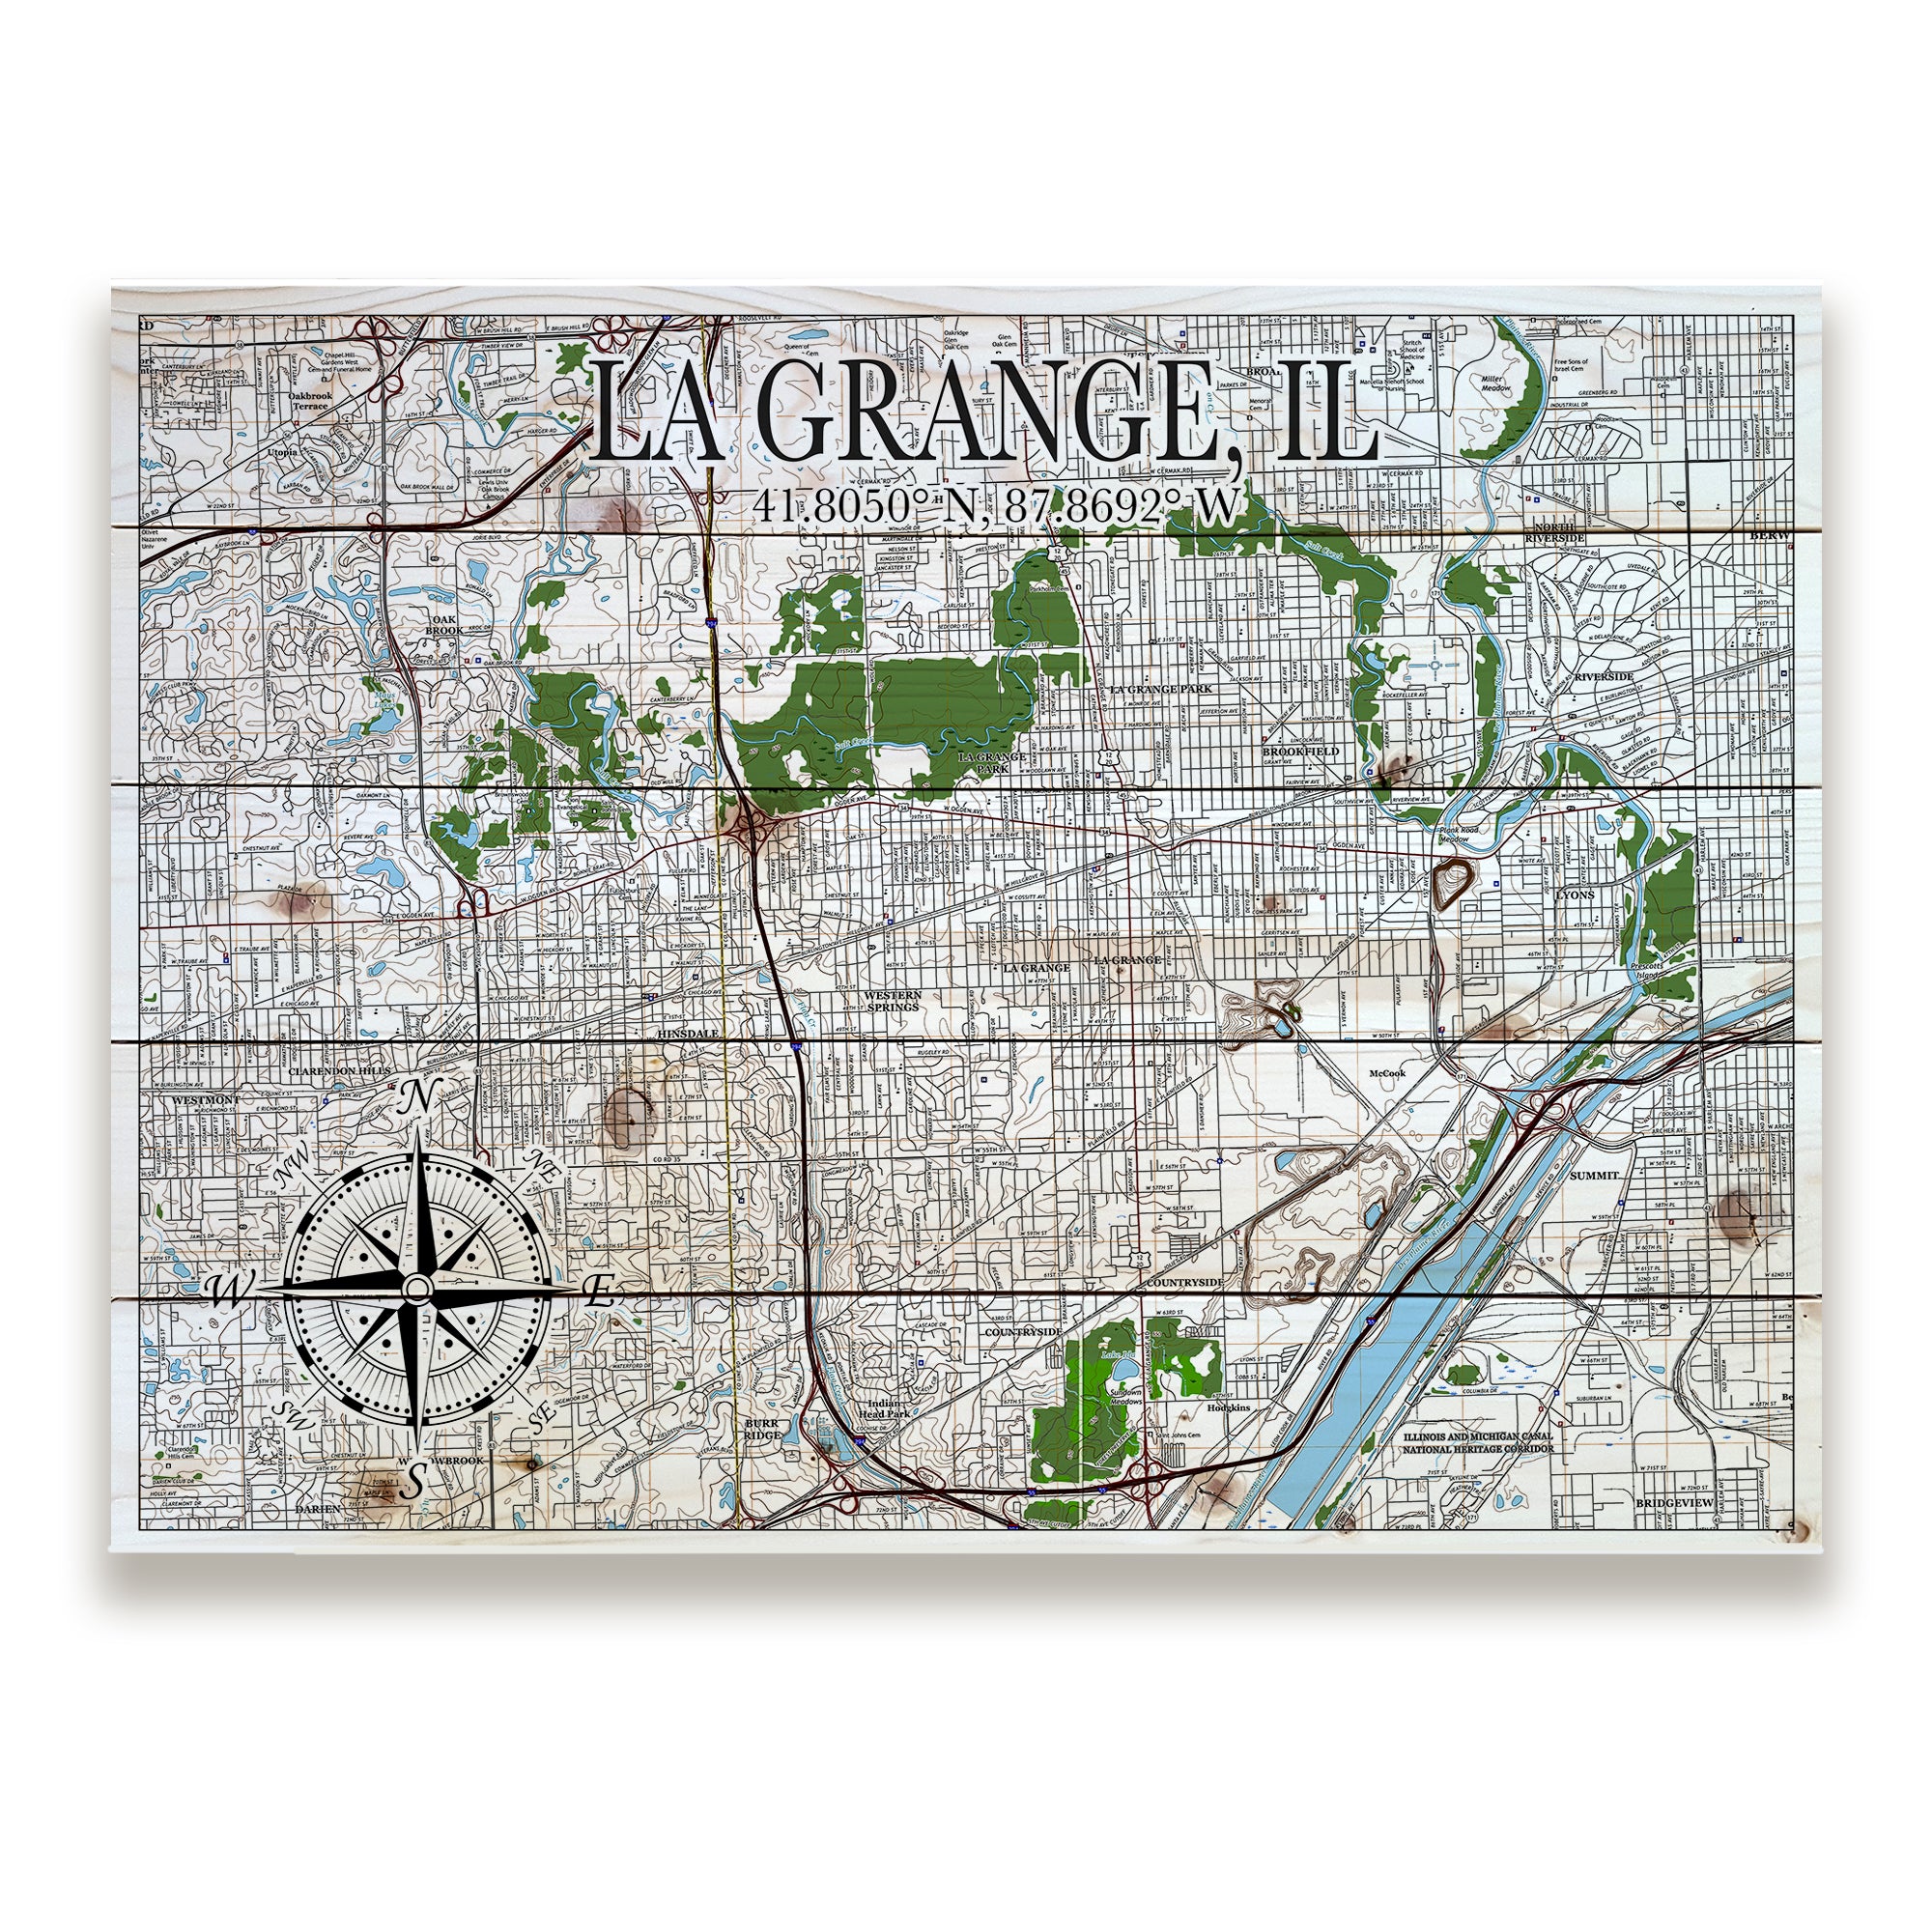 La Grange, IL Pallet Map